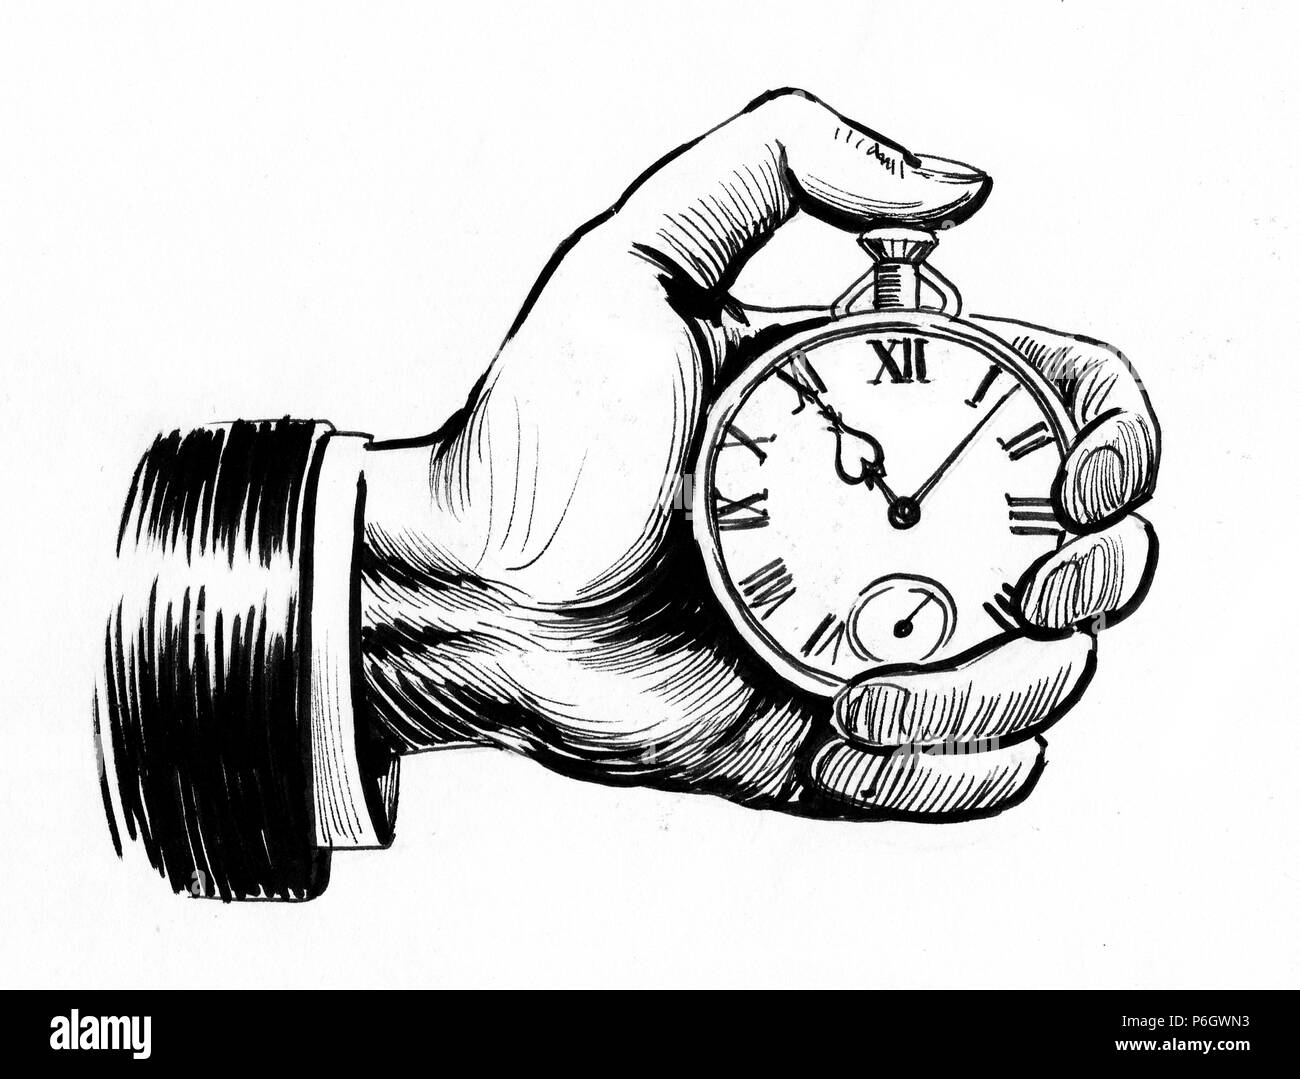 Mano sujetando un reloj cronómetro. Ilustración en blanco y negro de tinta  Fotografía de stock - Alamy